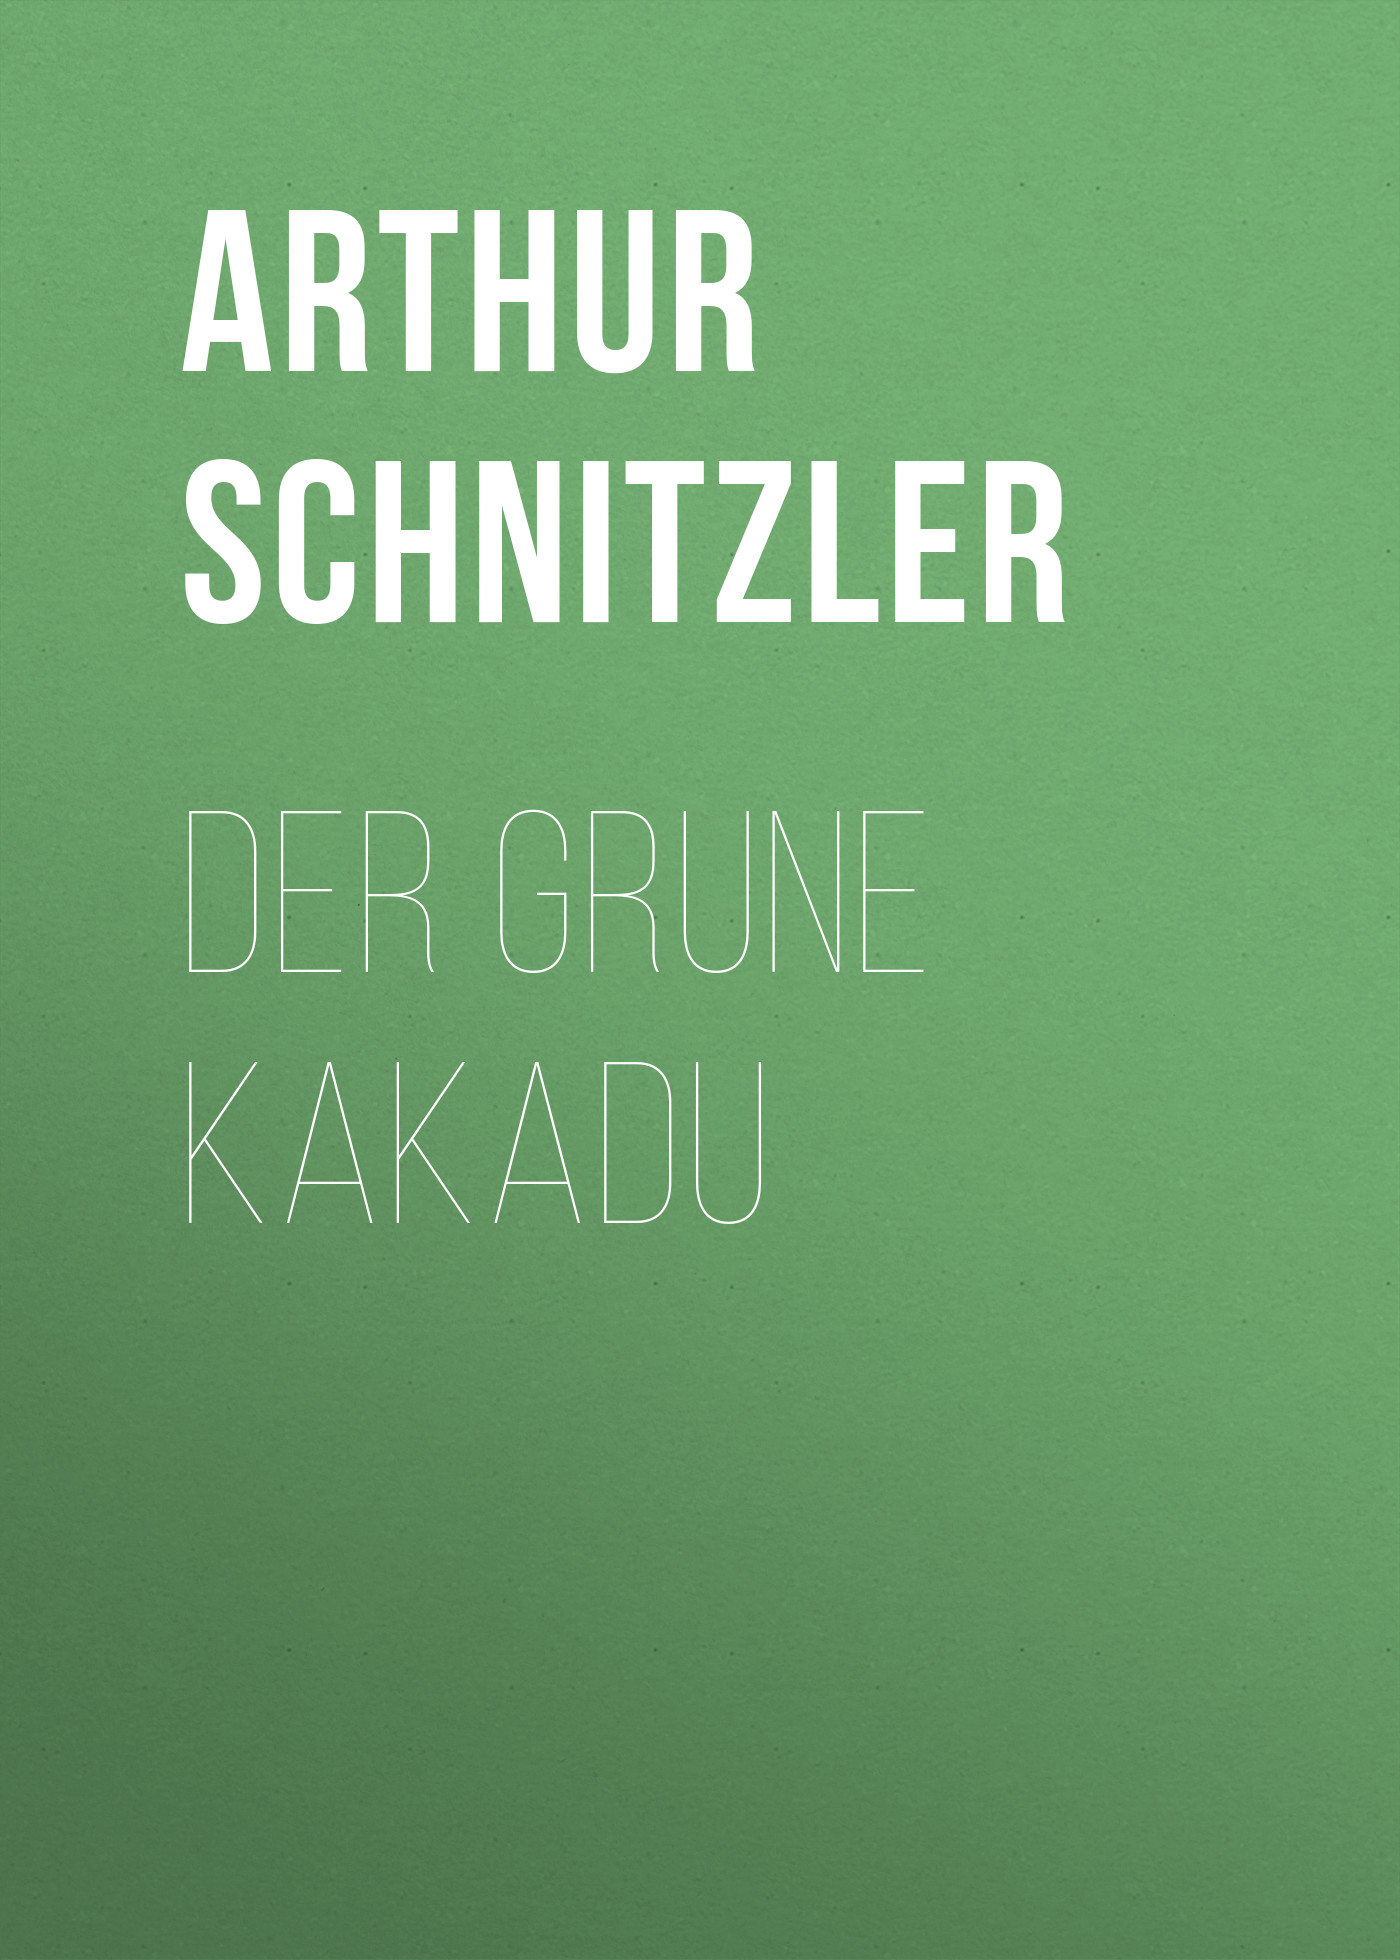 Книга Der grune Kakadu из серии , созданная Arthur Schnitzler, может относится к жанру Зарубежная классика. Стоимость электронной книги Der grune Kakadu с идентификатором 48632964 составляет 0 руб.